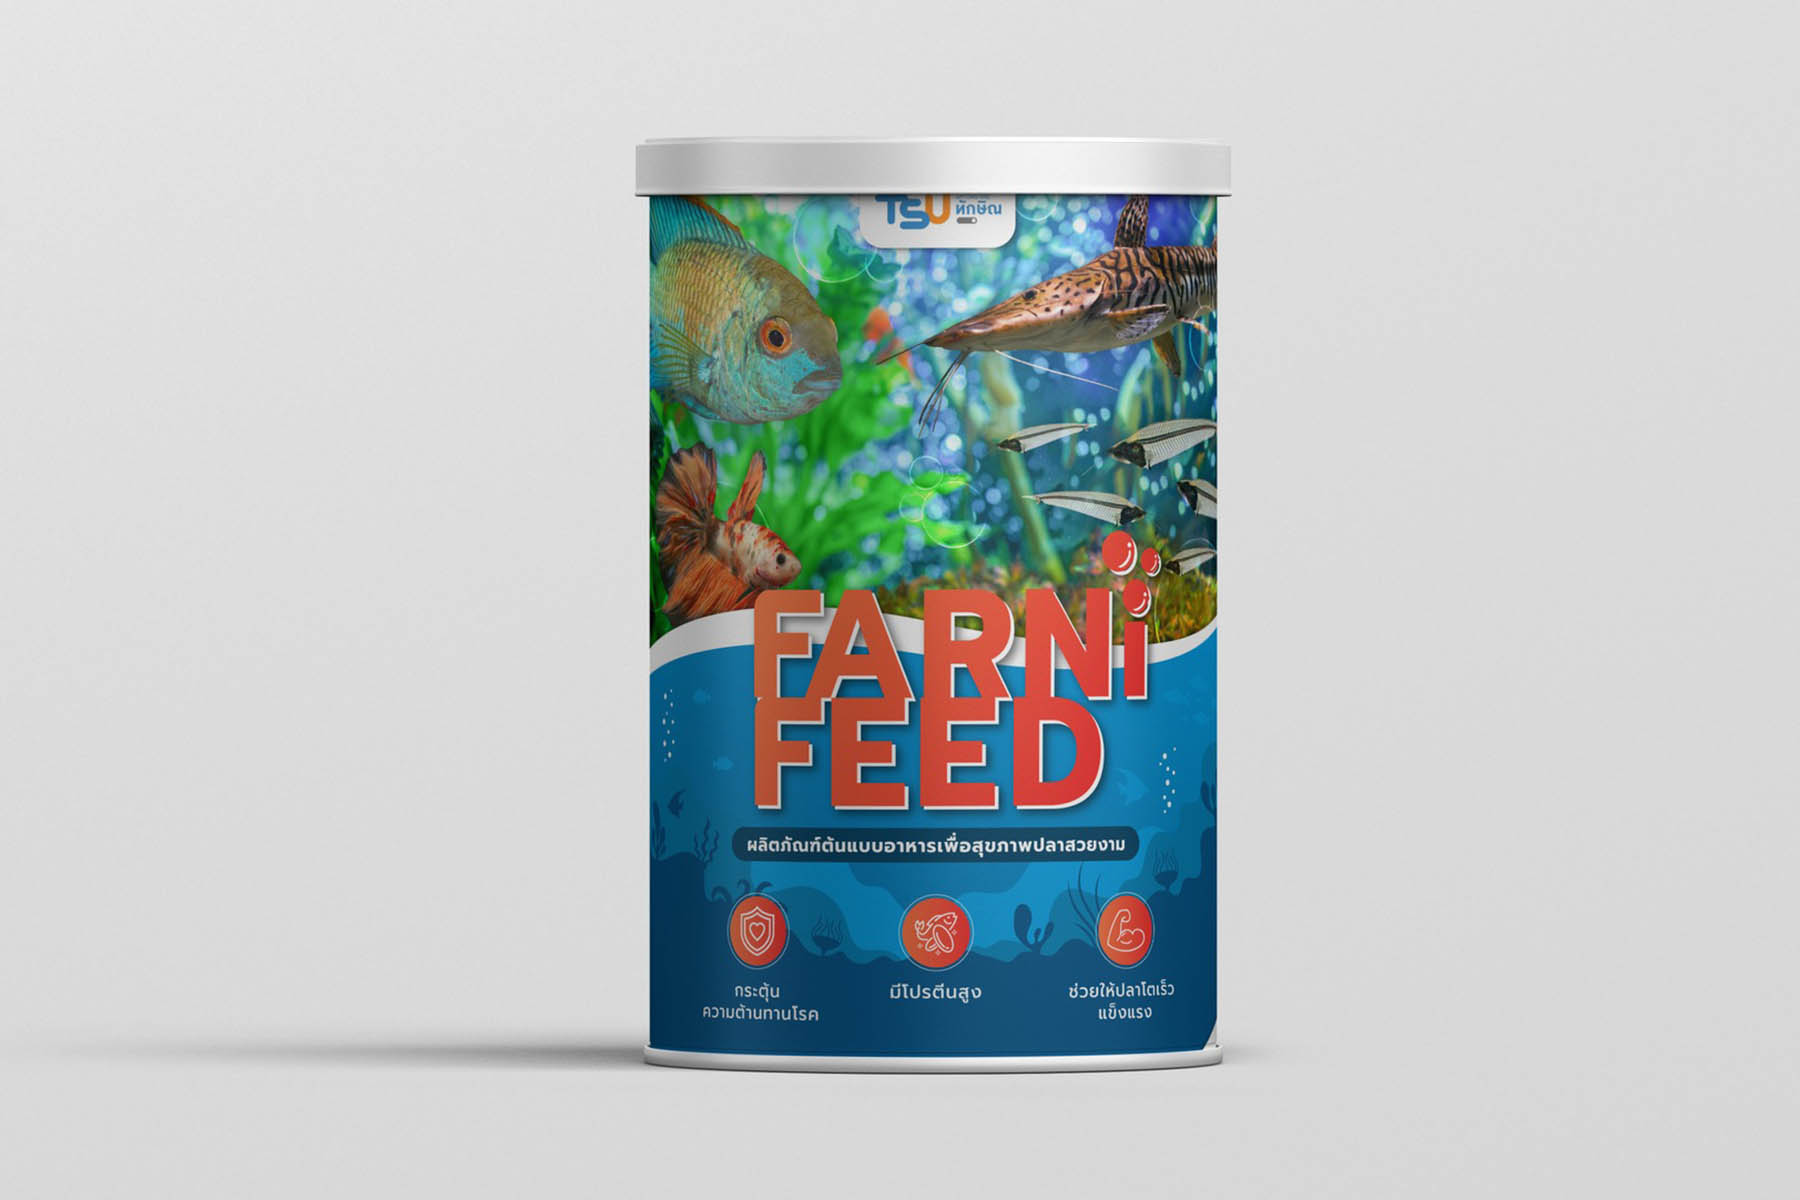 มหาวิทยาลัยทักษิณ เปิดตัว Farni-Feed  ผลิตภัณฑ์ต้นแบบอาหารเพื่อสุขภาพ สำหรับปลาสวยงาม